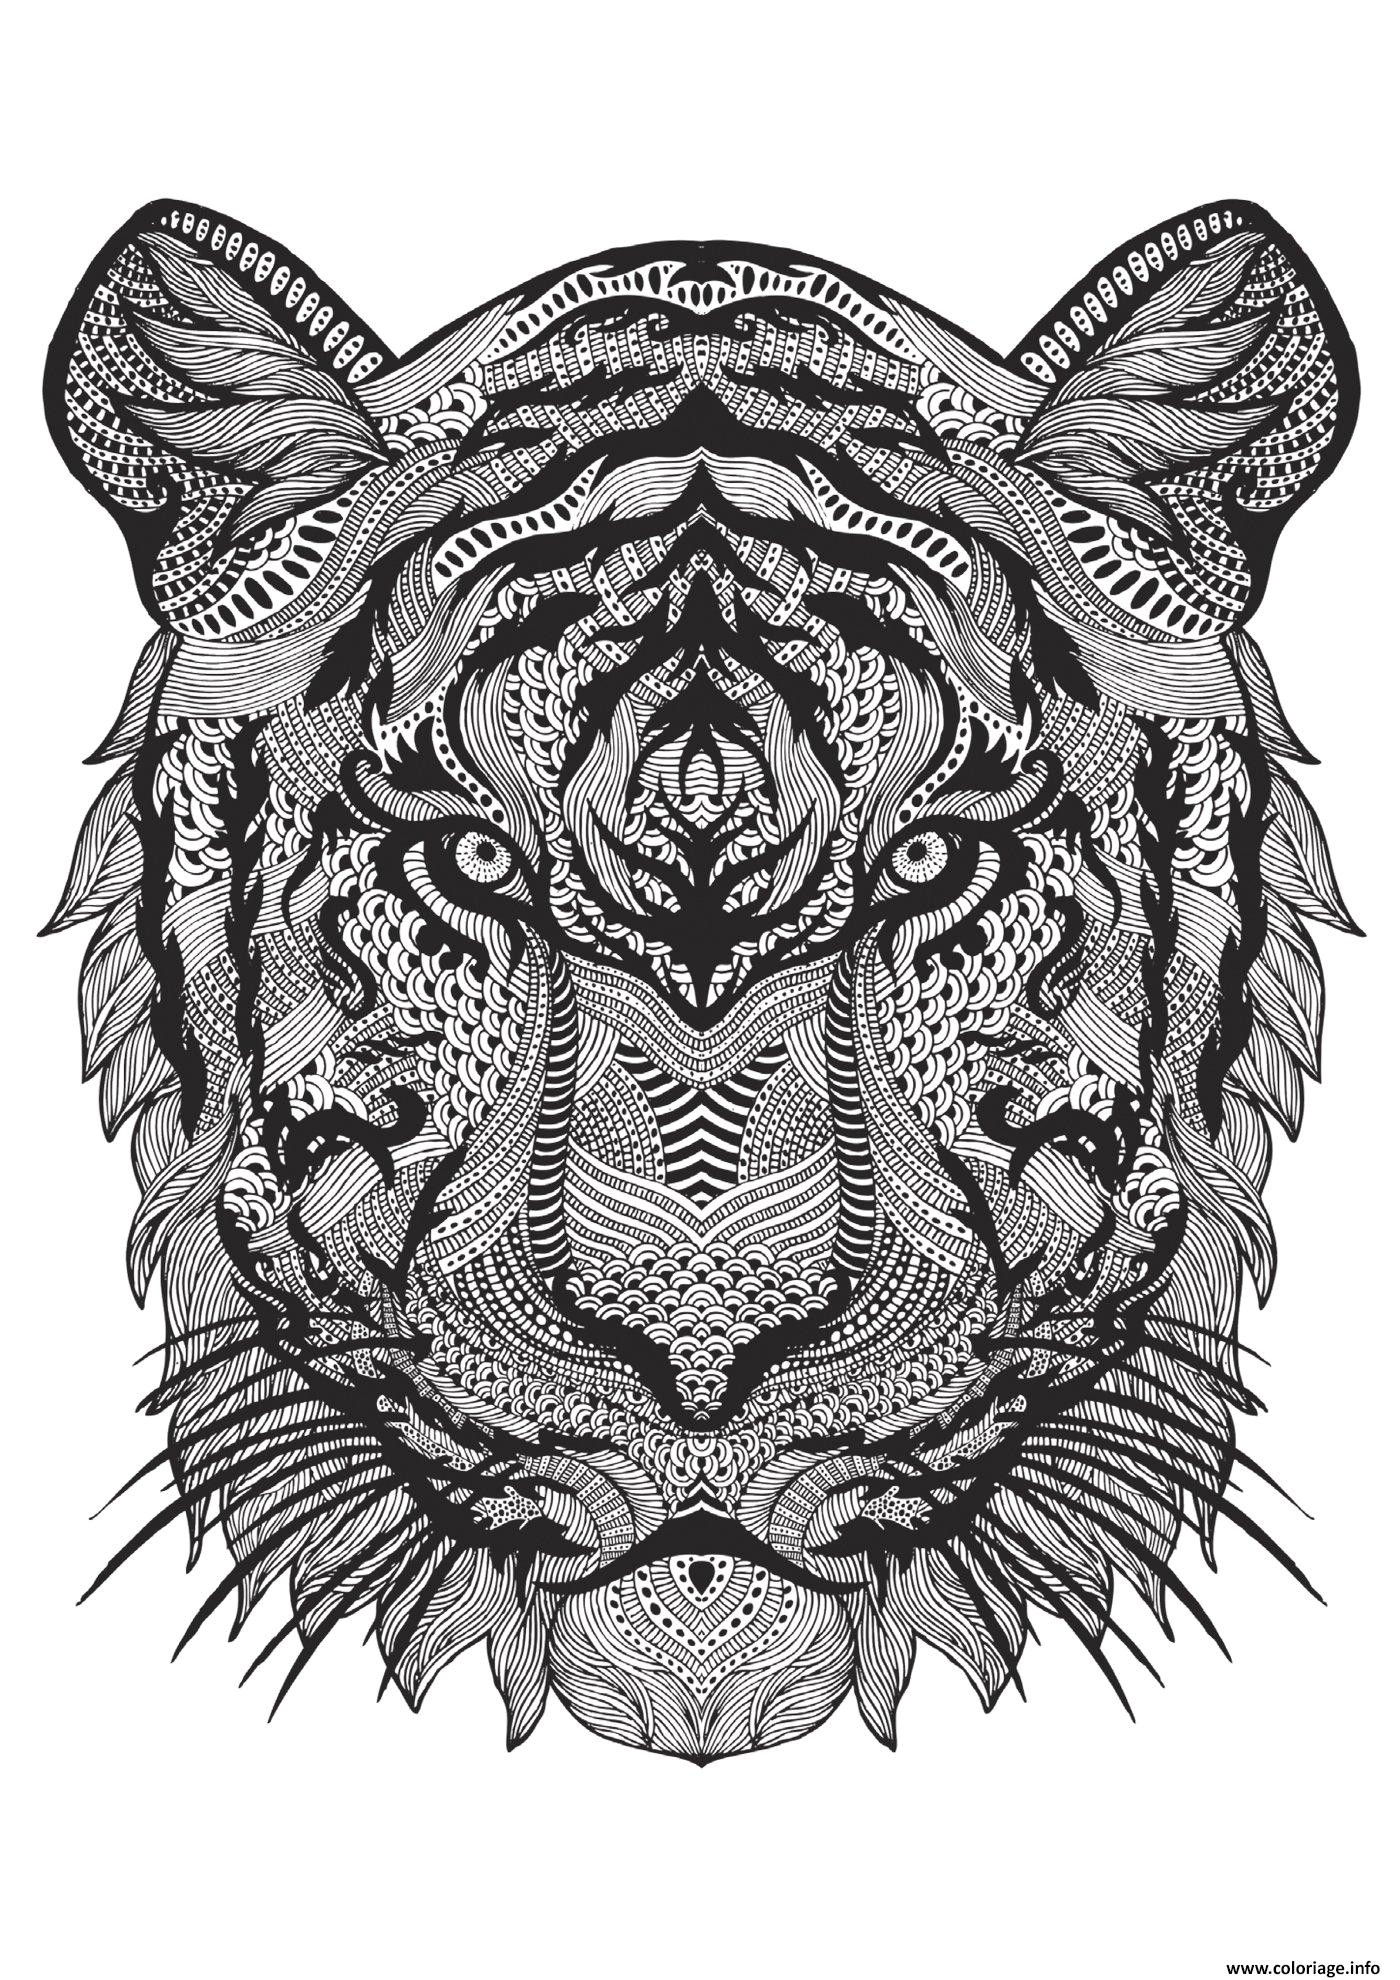 Coloriage adulte animal tigre difficile antistress Coloriage adulte a imprimer